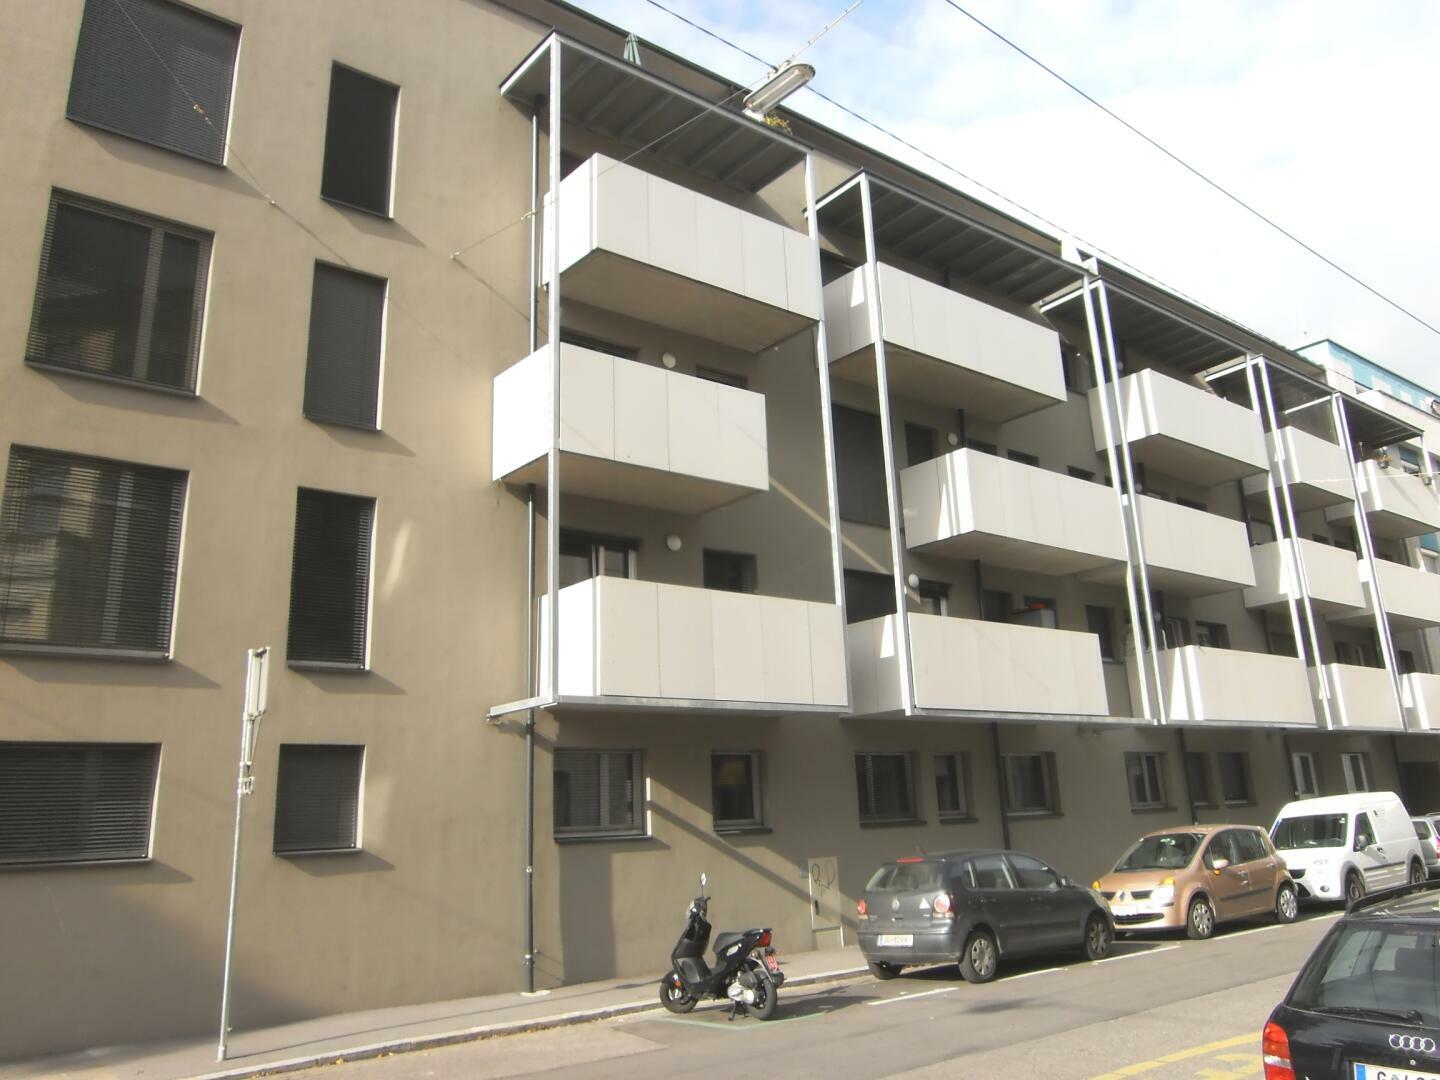 2-Zimmer-Wohnung mit zwei Balkonen /  / 8020 Graz / Bild 1